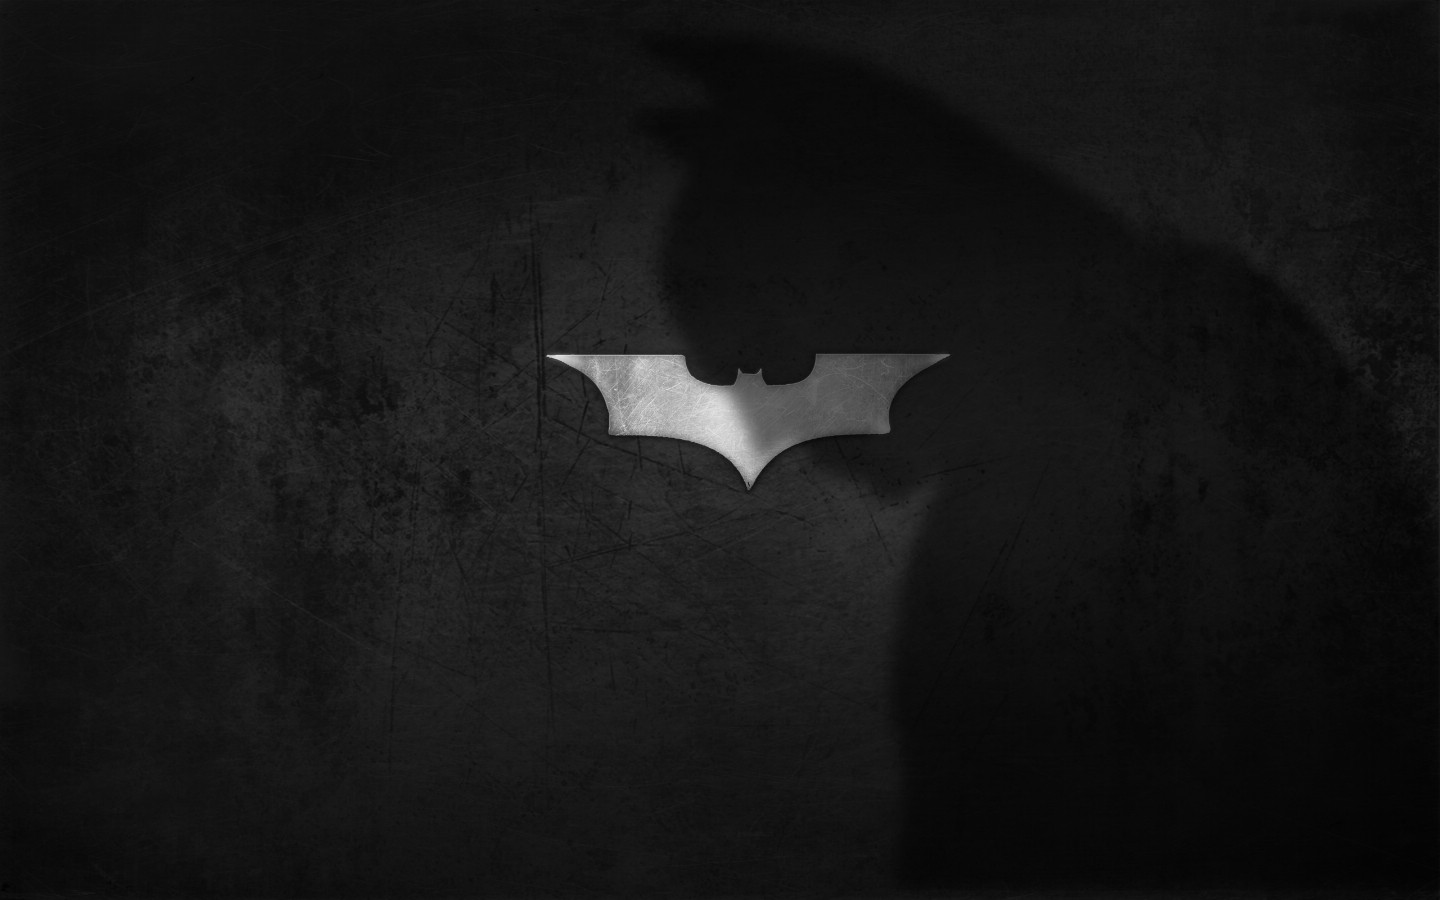 壁纸1440x900蝙蝠侠 宽屏 桌酷精选一图 壁纸10壁纸 蝙蝠侠（宽屏）精壁纸 蝙蝠侠（宽屏）精图片 蝙蝠侠（宽屏）精素材 精选壁纸 精选图库 精选图片素材桌面壁纸